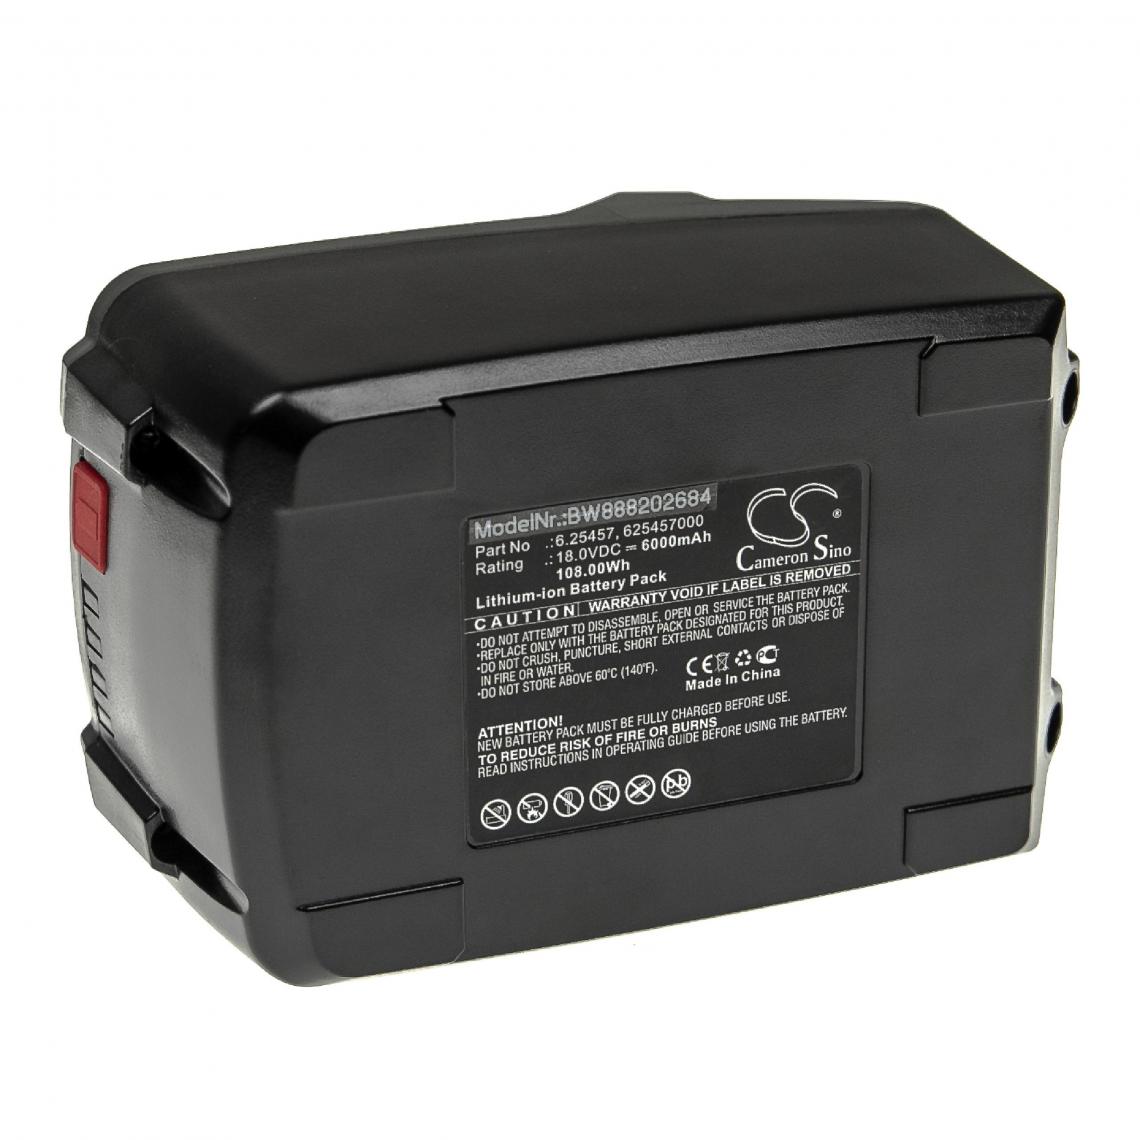 Vhbw - vhbw Batterie compatible avec Metabo AHS 18-55 V, AS 18 L PC, ASE 18, ASE18 LTX, ASE 18 LTX outil électrique (6000mAh Li-ion 18 V) - Autre appareil de mesure